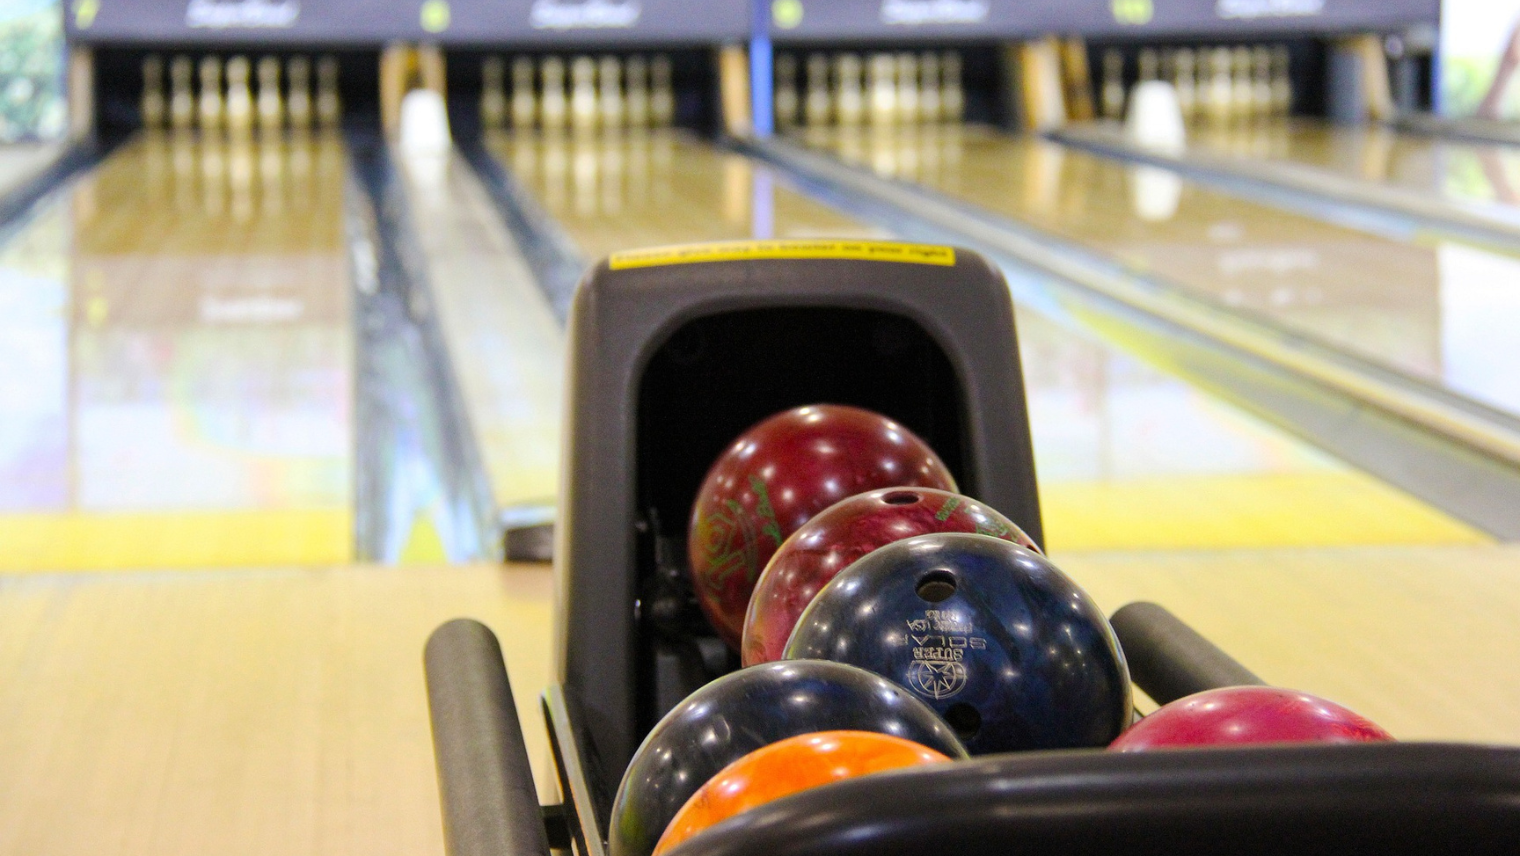 A bowling lane 